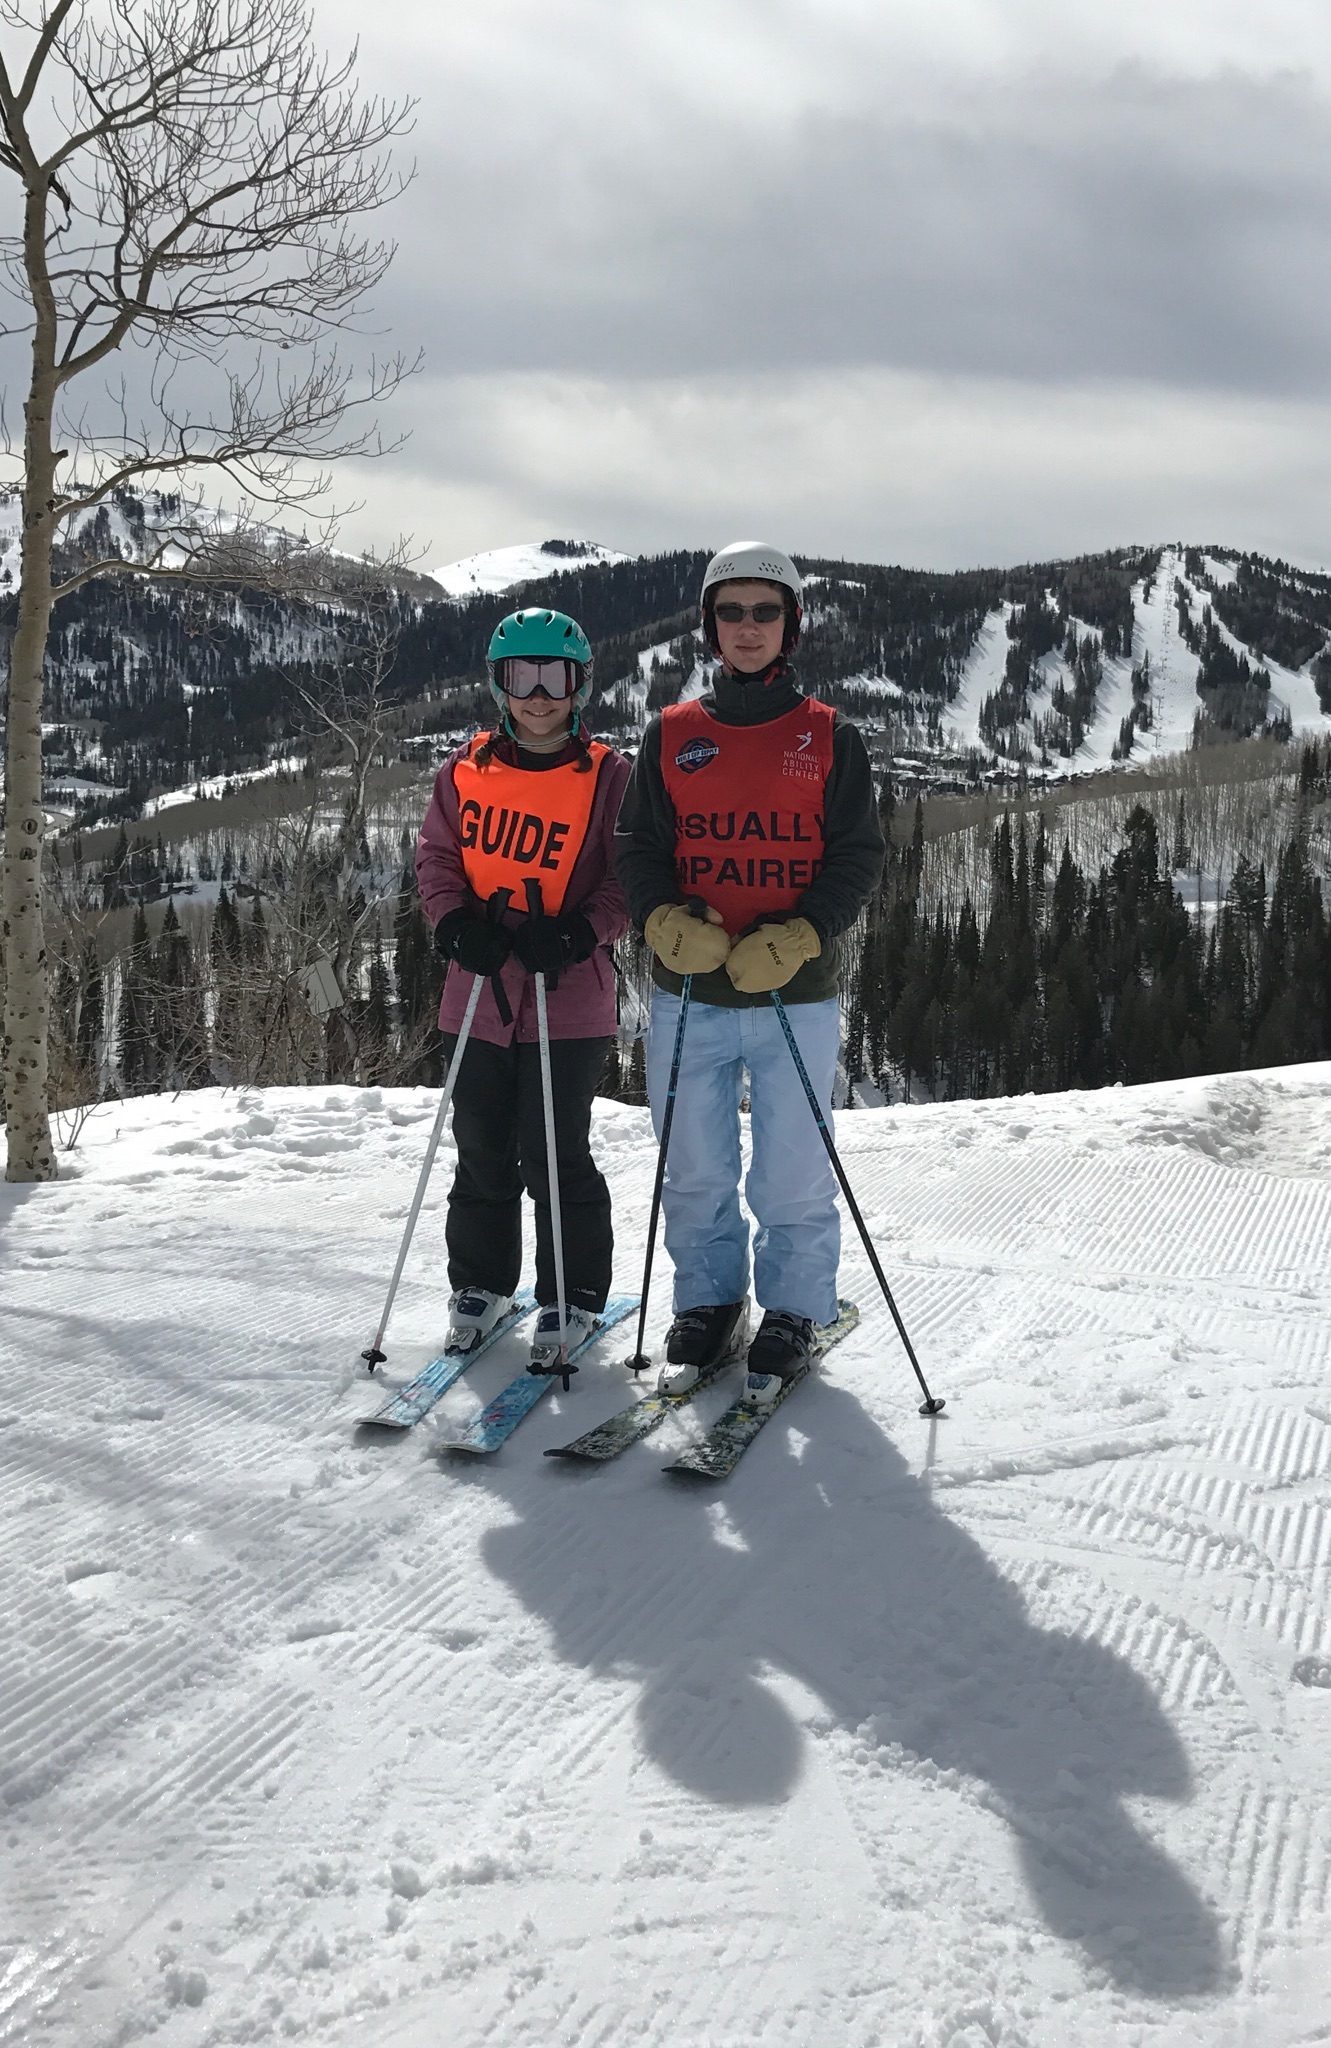 Louie skiing in Utah with his sister